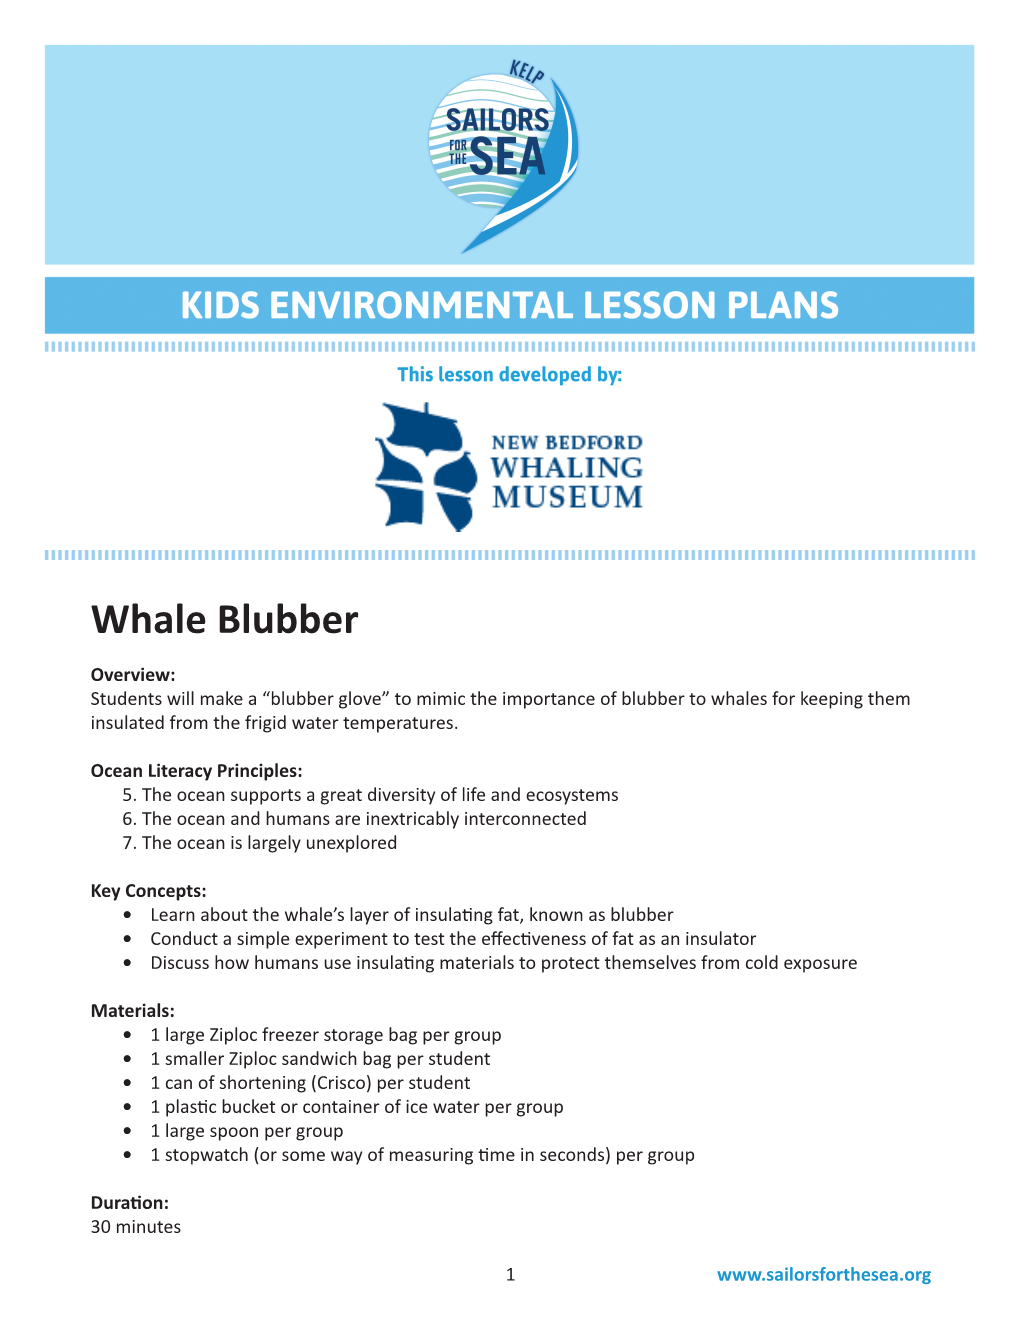 Whale Blubber